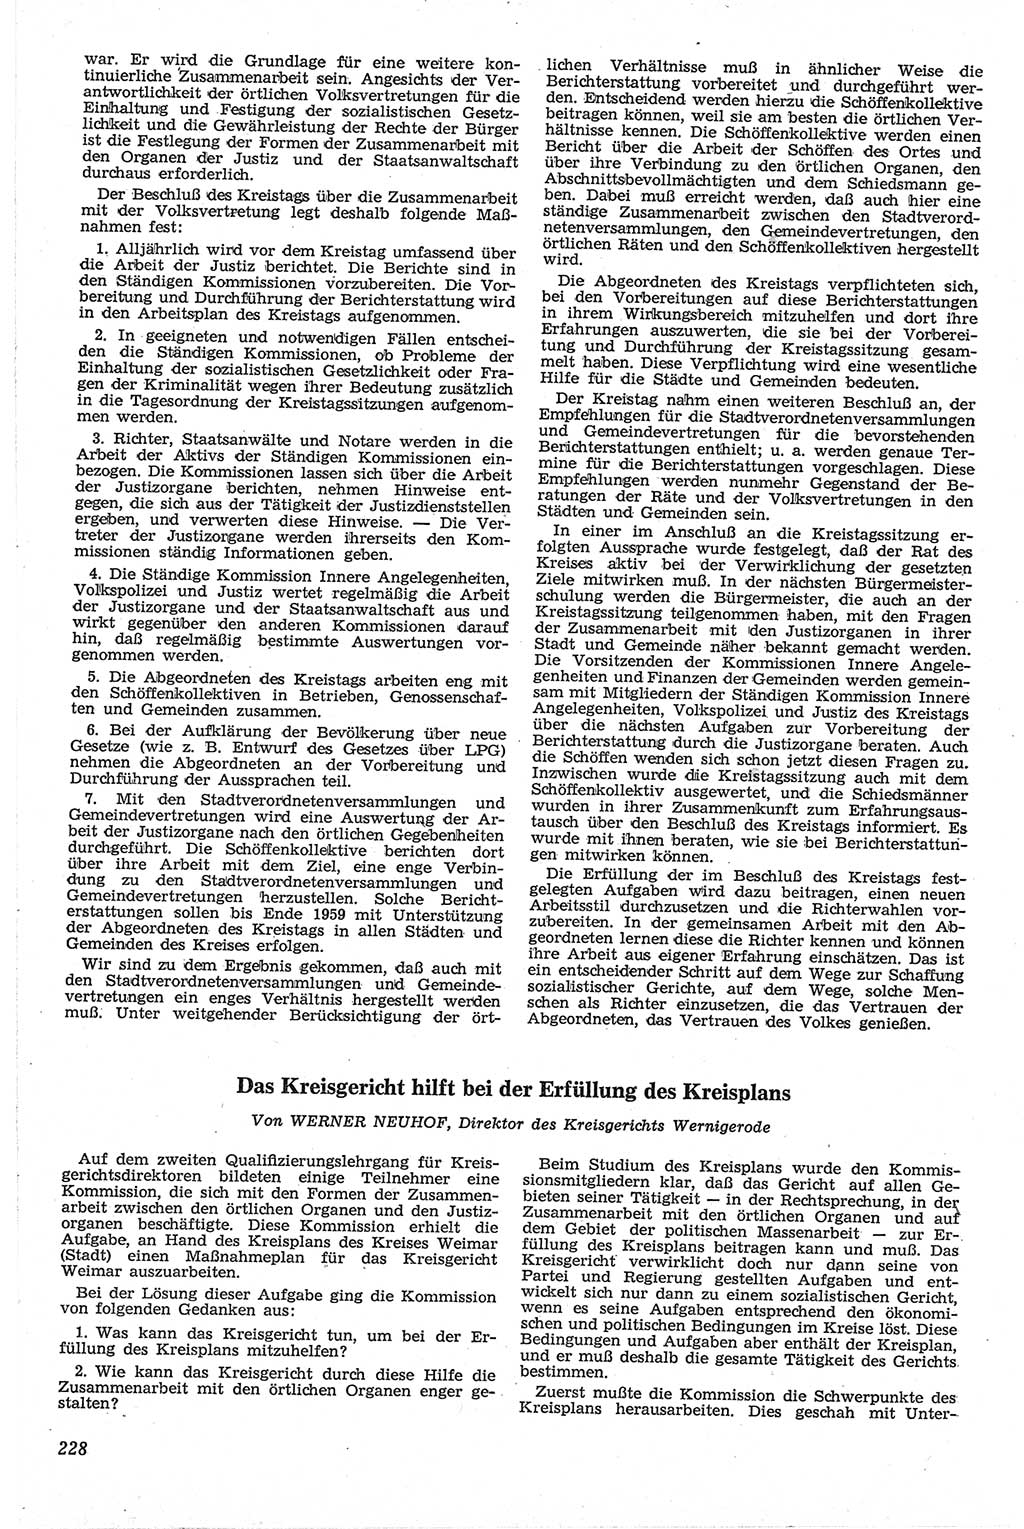 Neue Justiz (NJ), Zeitschrift für Recht und Rechtswissenschaft [Deutsche Demokratische Republik (DDR)], 13. Jahrgang 1959, Seite 228 (NJ DDR 1959, S. 228)